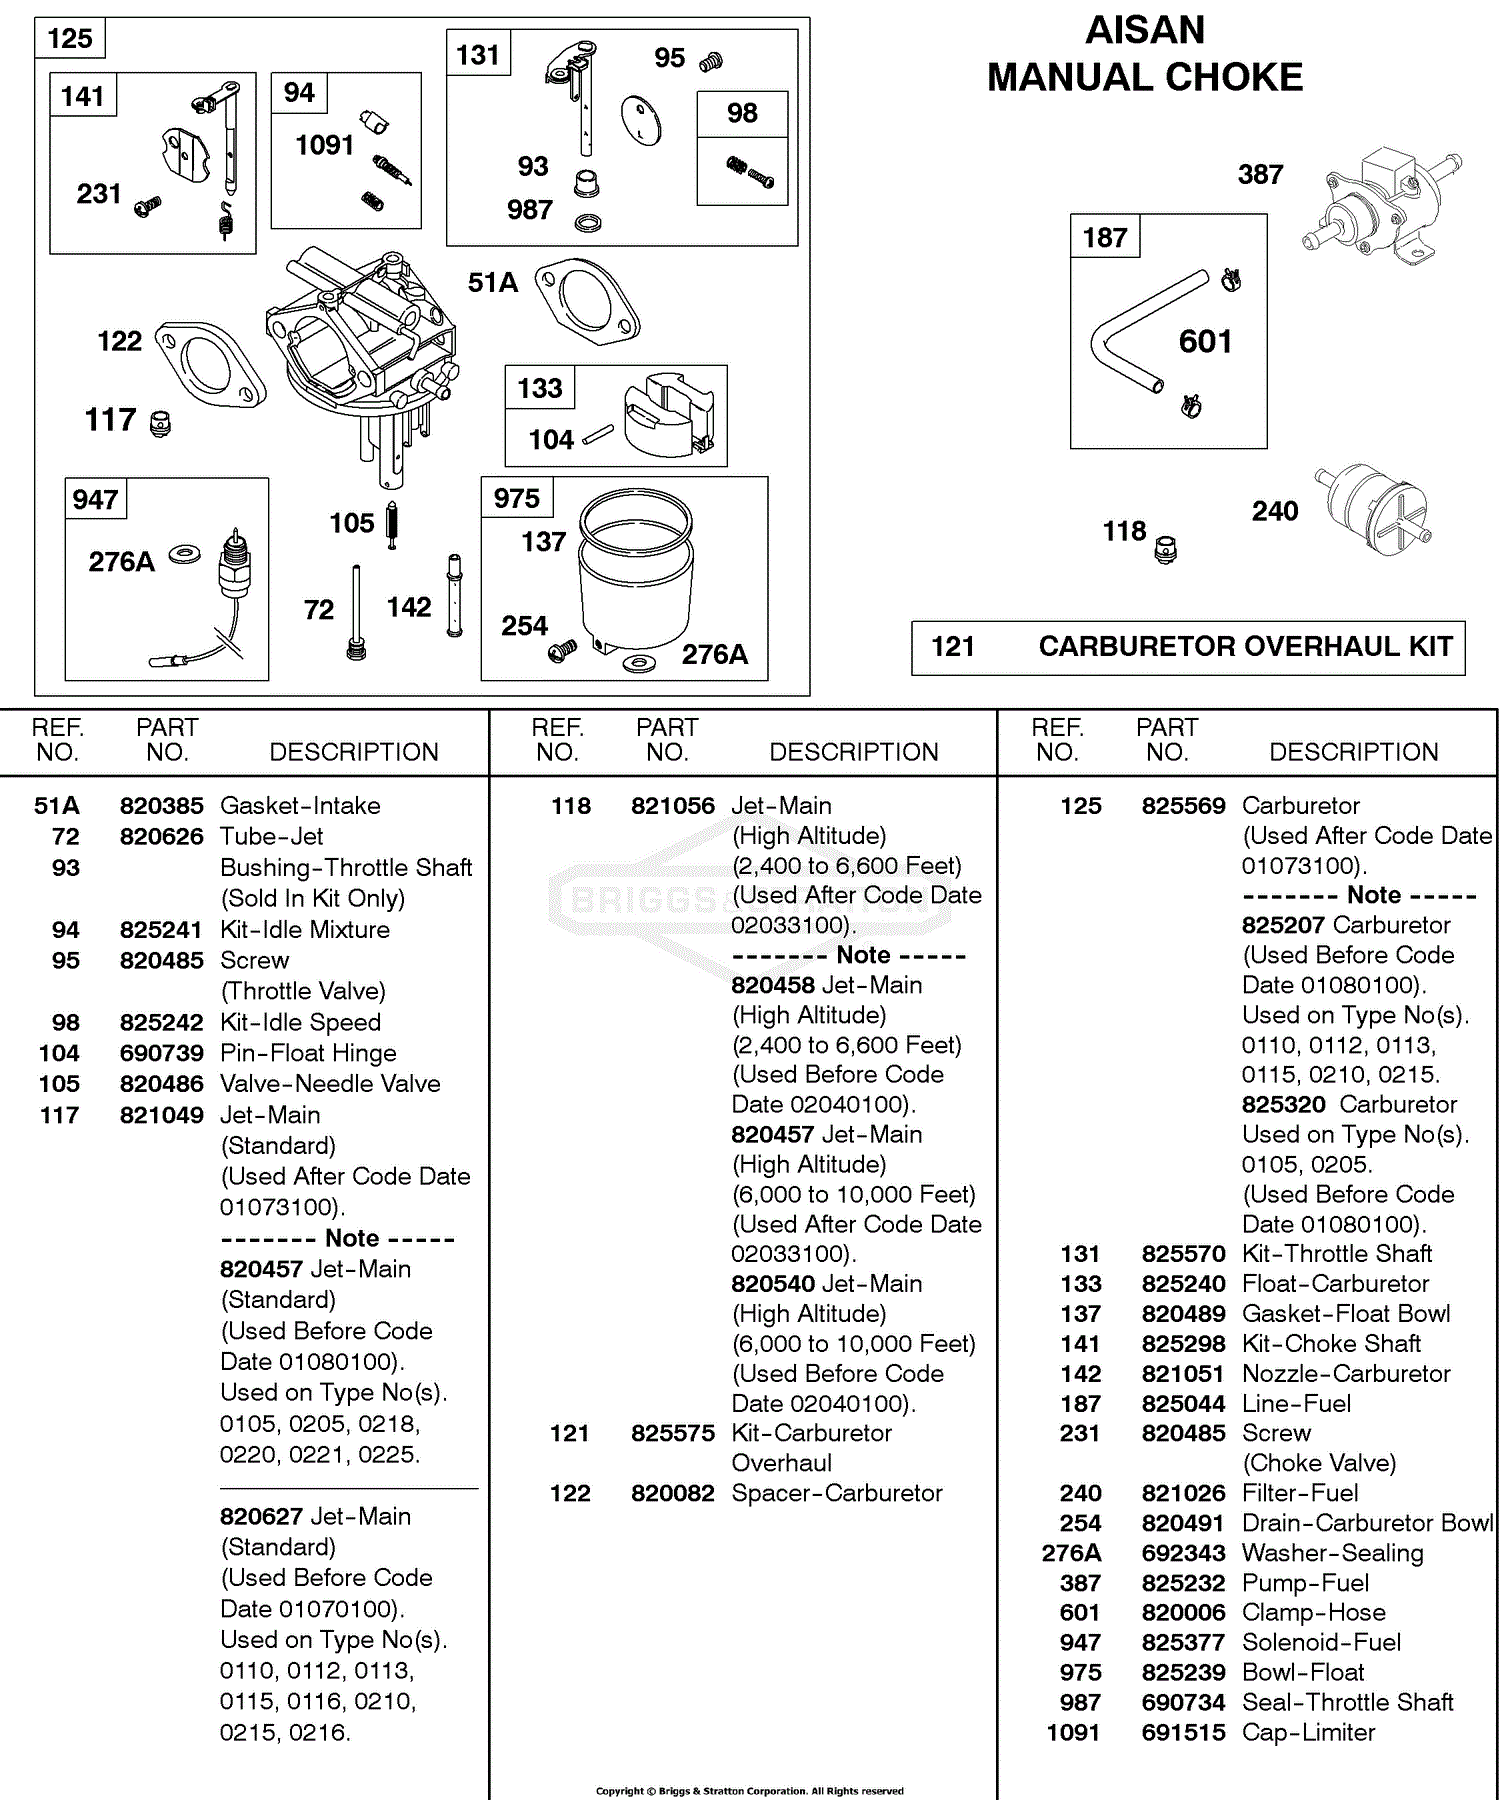 Briggs and Stratton 5804470311E2 Parts Diagram for Carburetor, Aisan Manual Choke